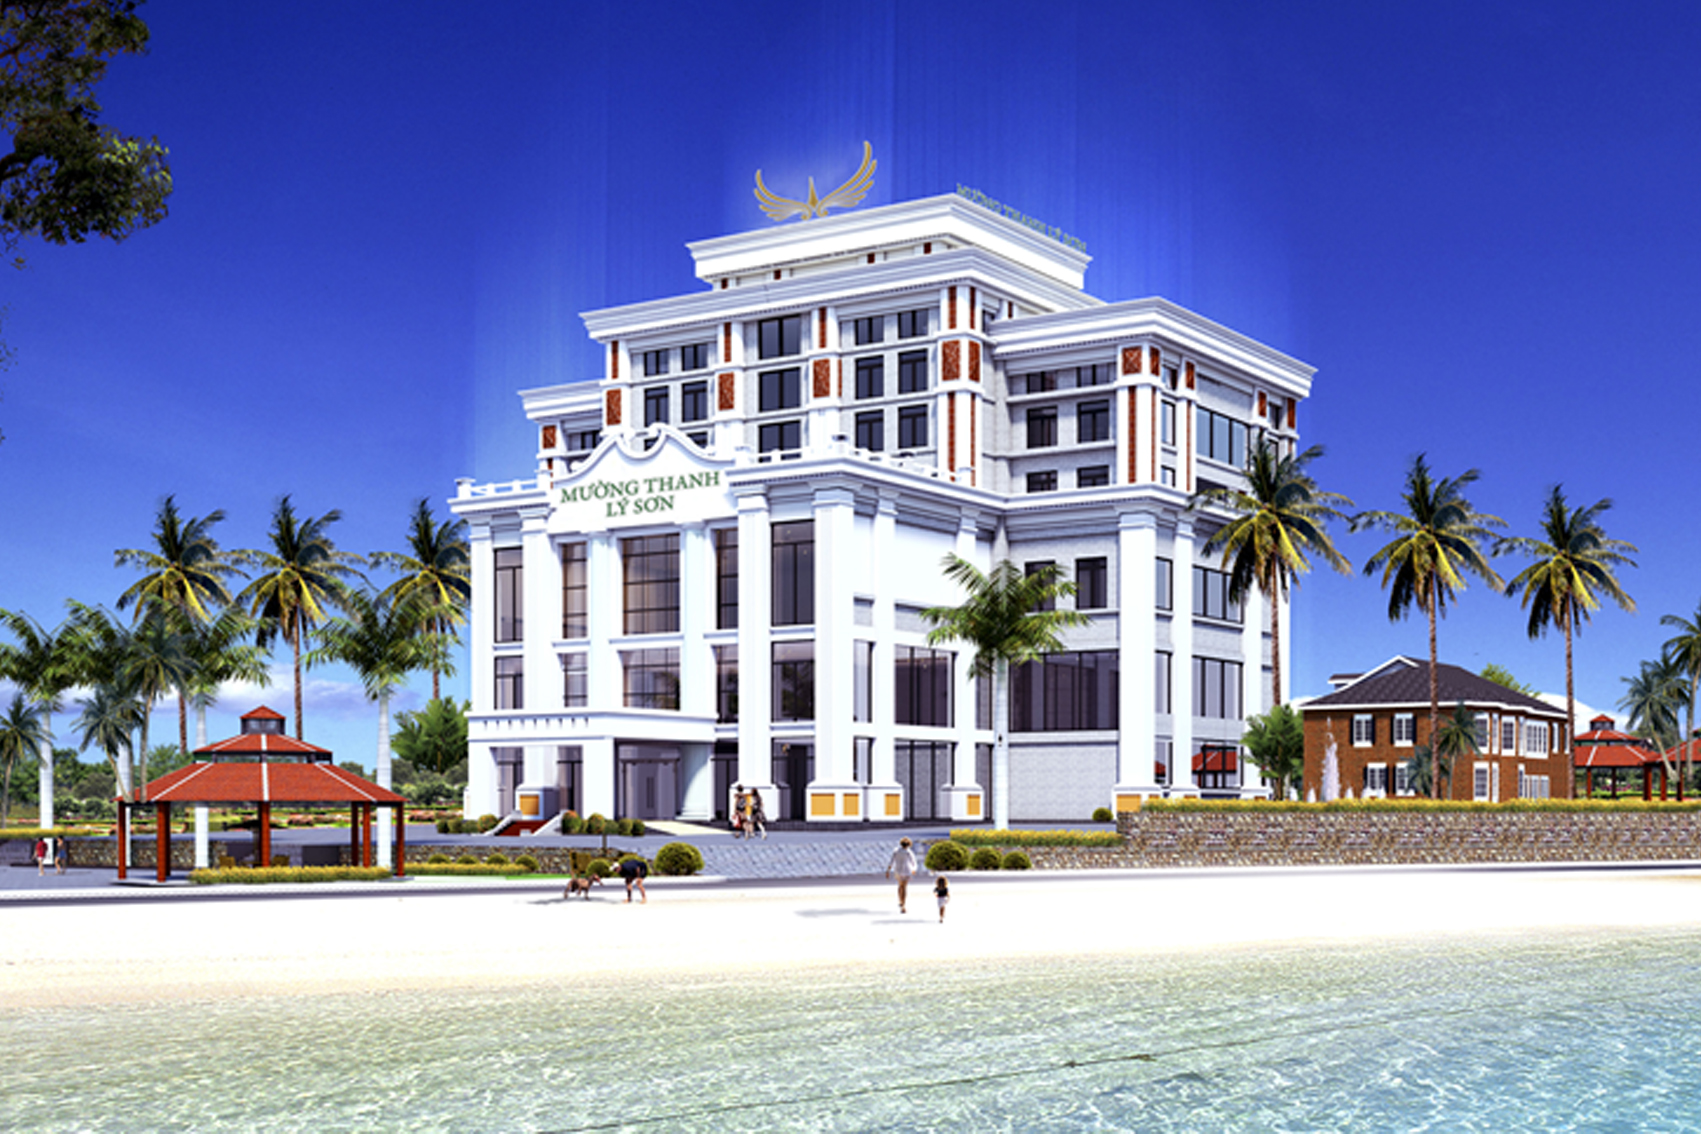 Dự án: Khách sạn Mường Thanh Lý Sơn